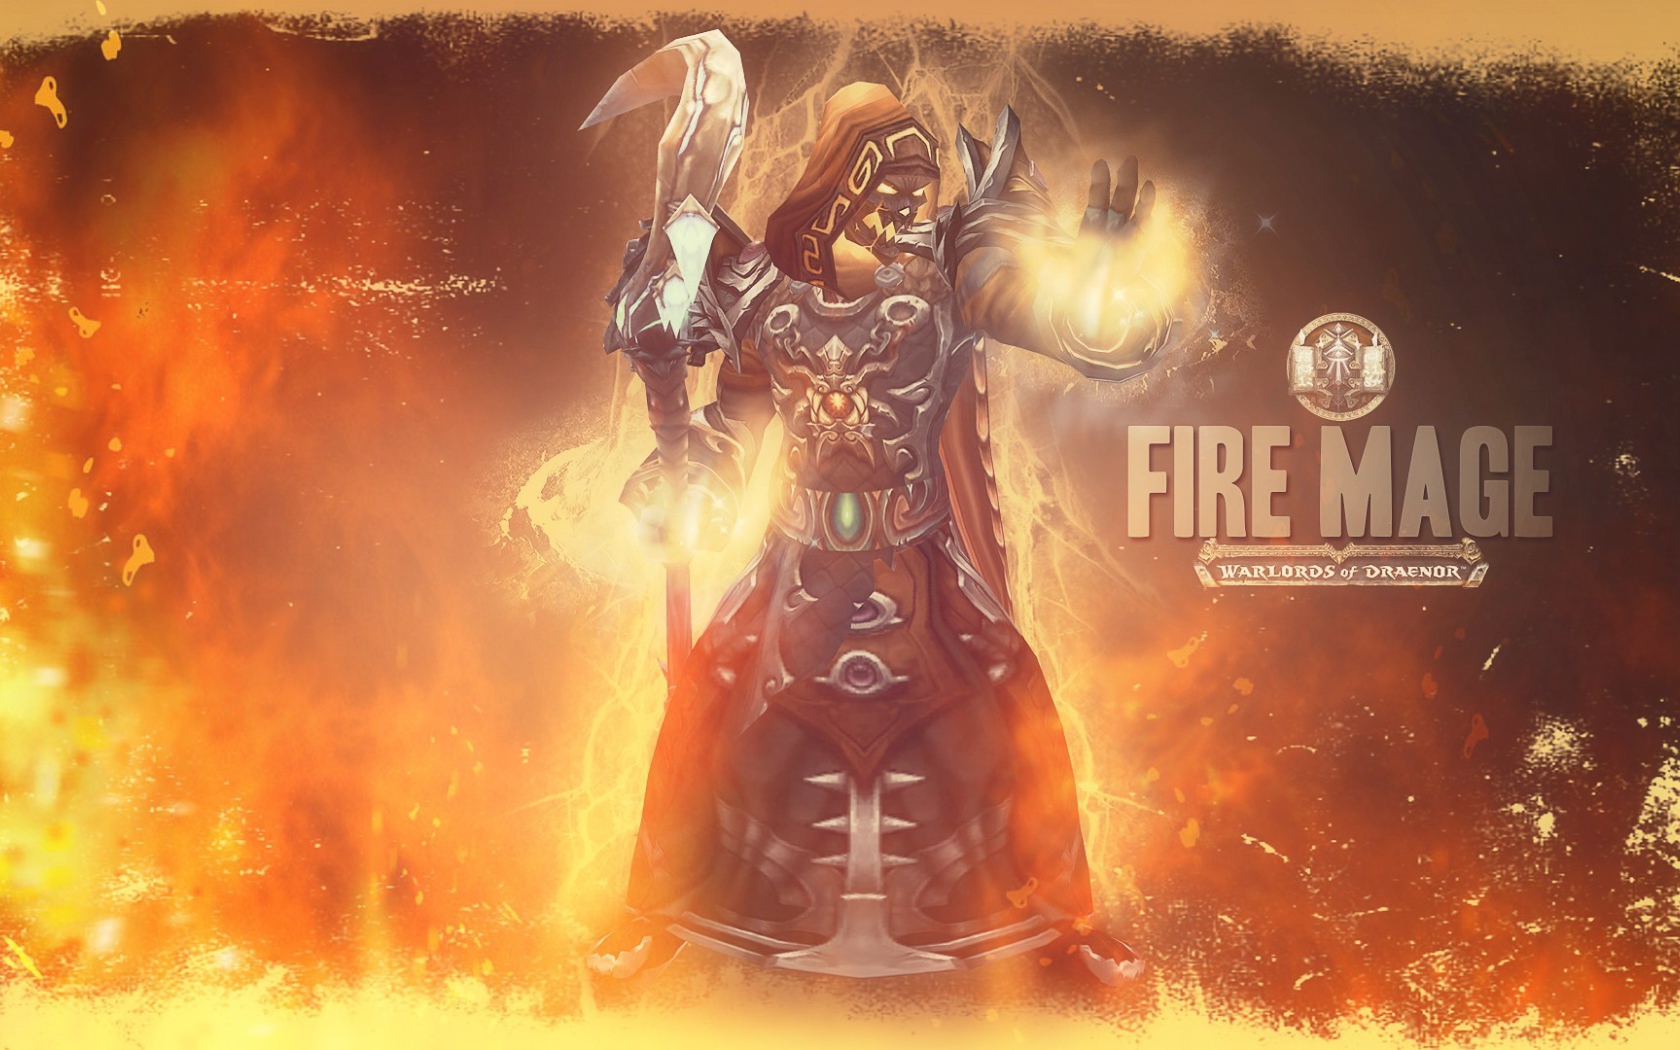 Огненная магия, игра World of Warcraft Warlords of Draenor